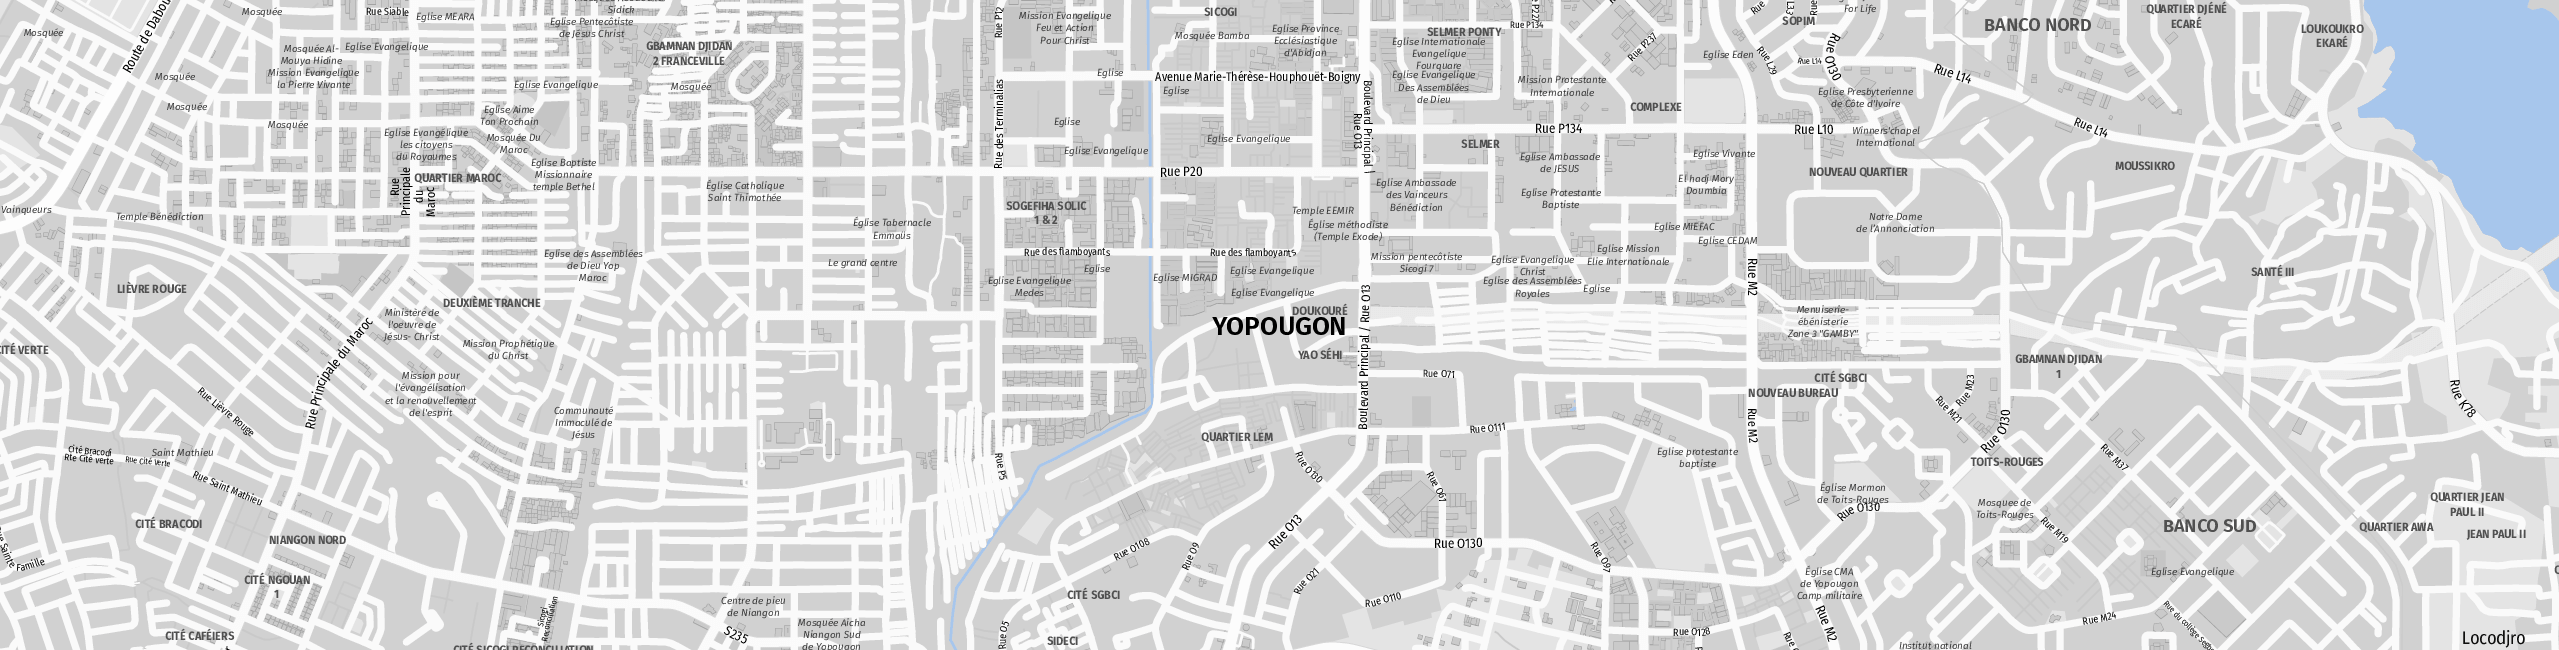 Stadtplan Yopougon zum Downloaden.